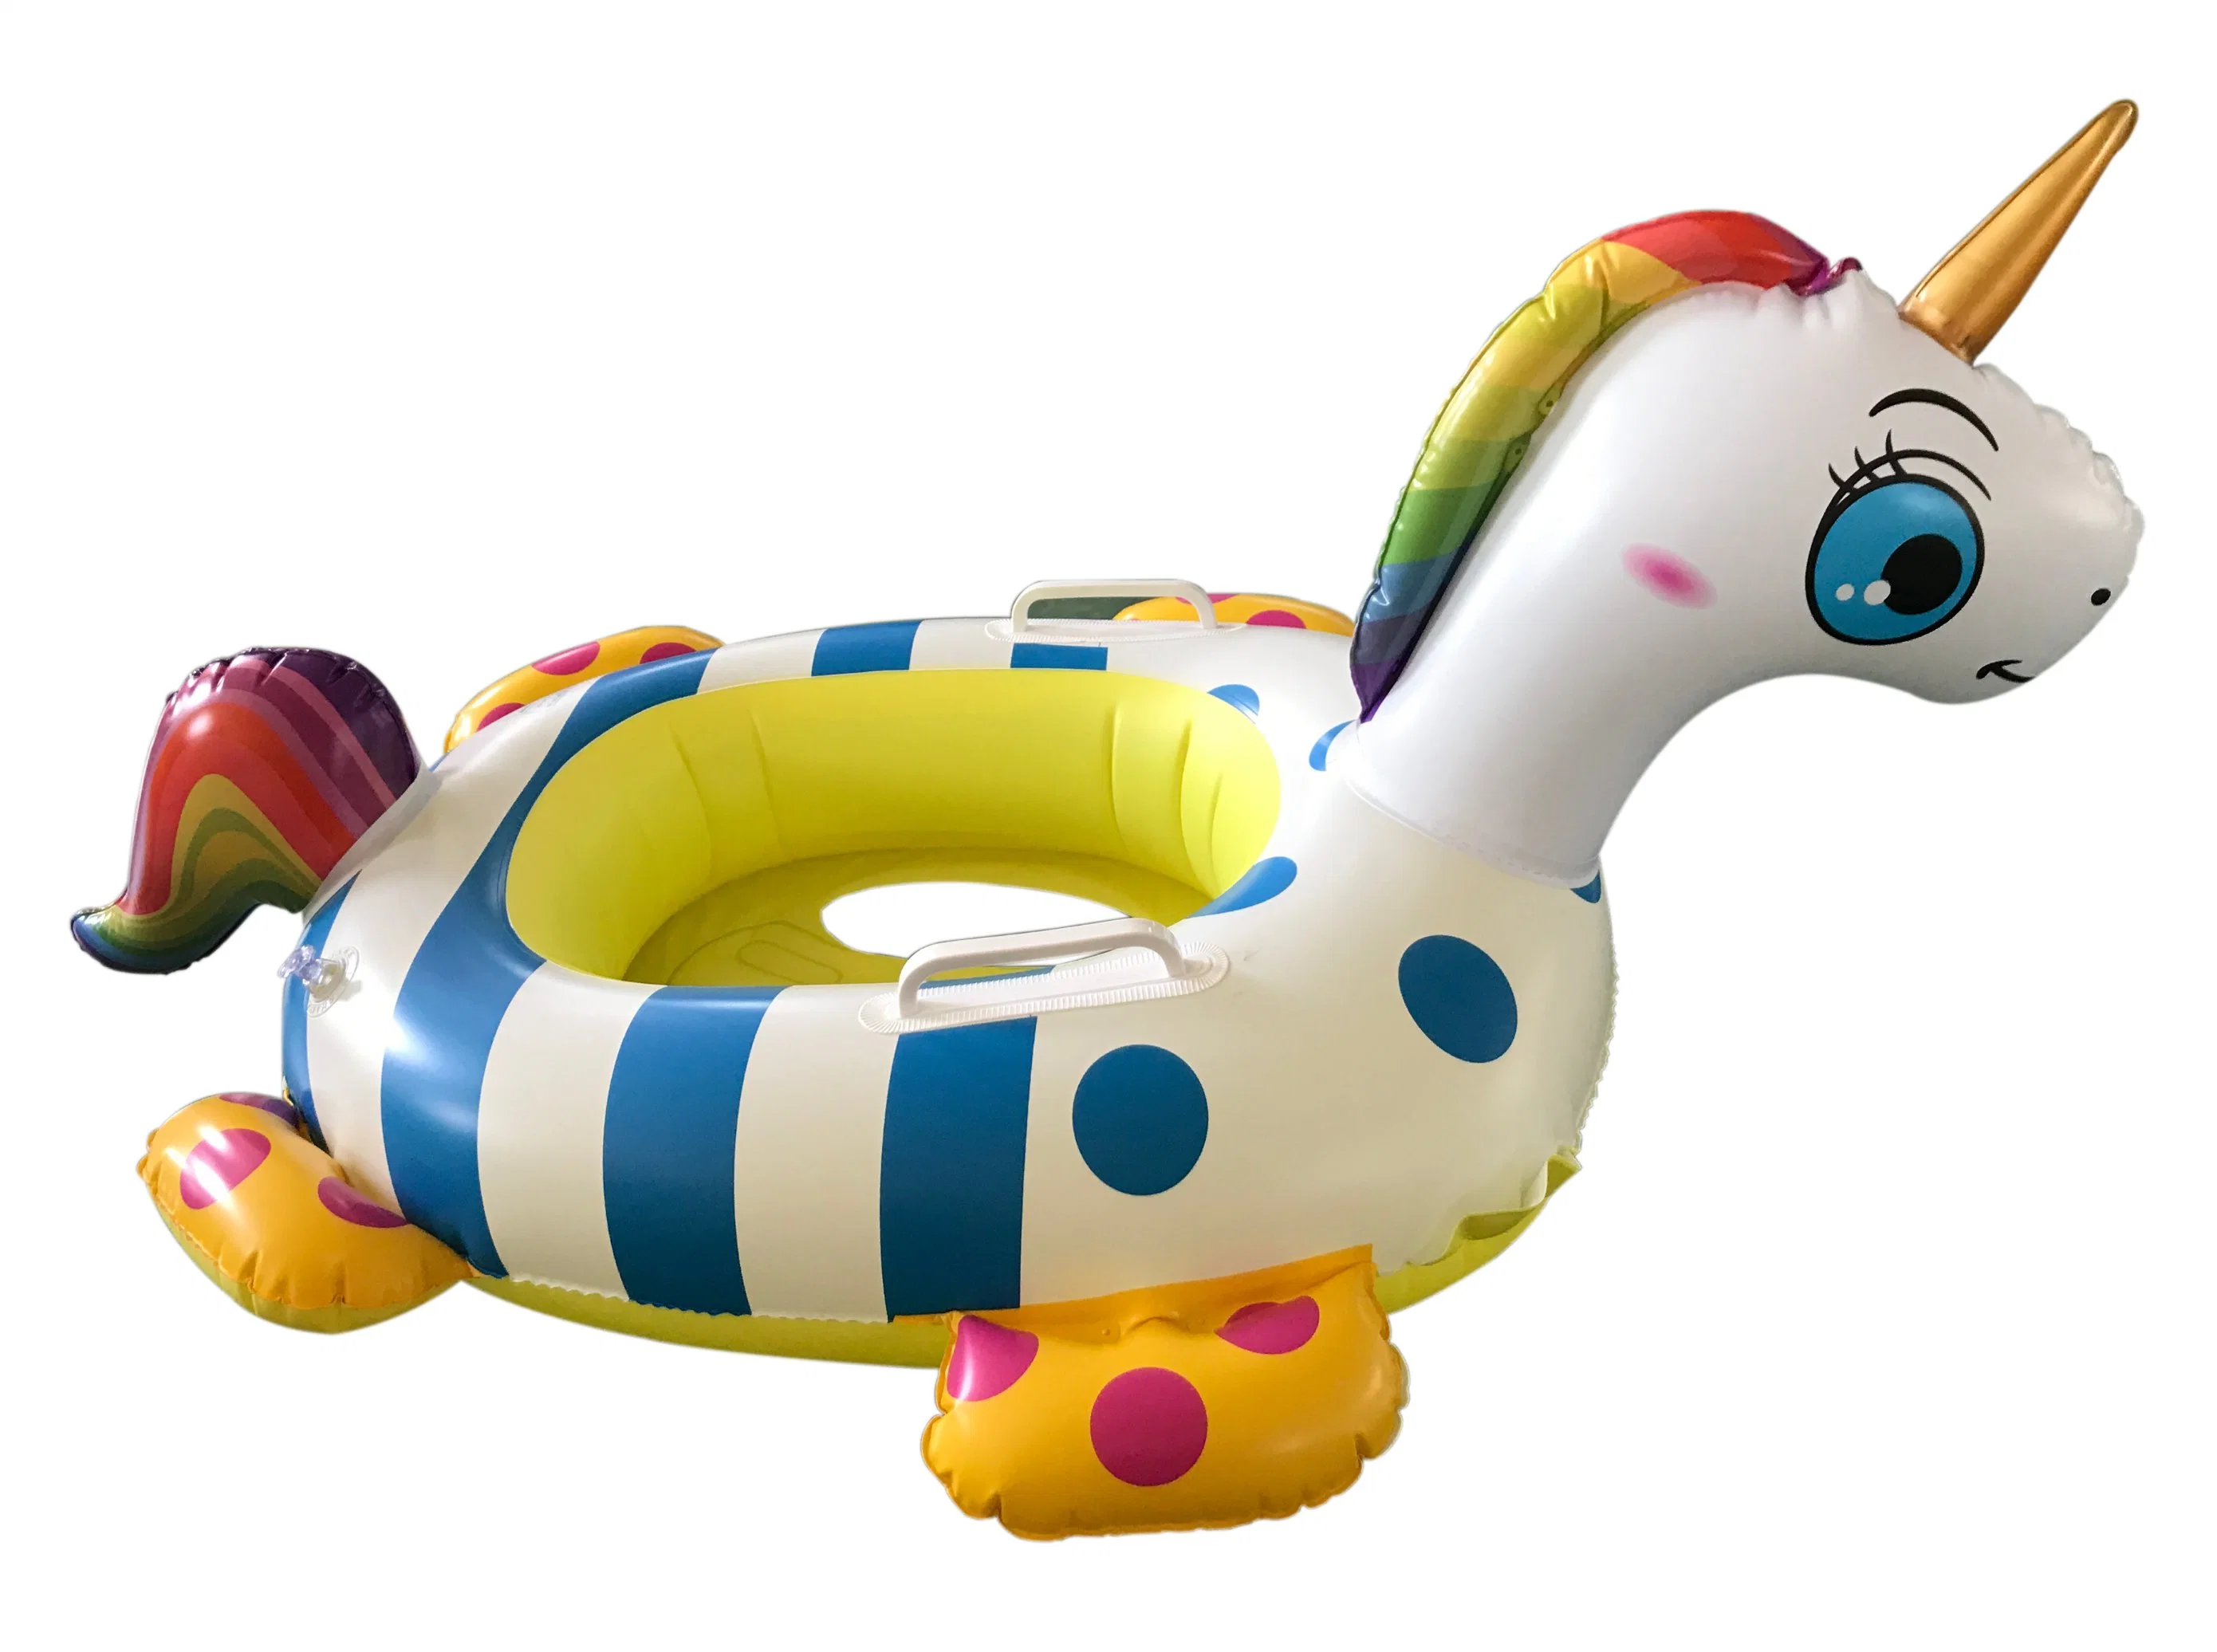 Bouée de piscine gonflable pour bébé licorne respectueuse de l'environnement.